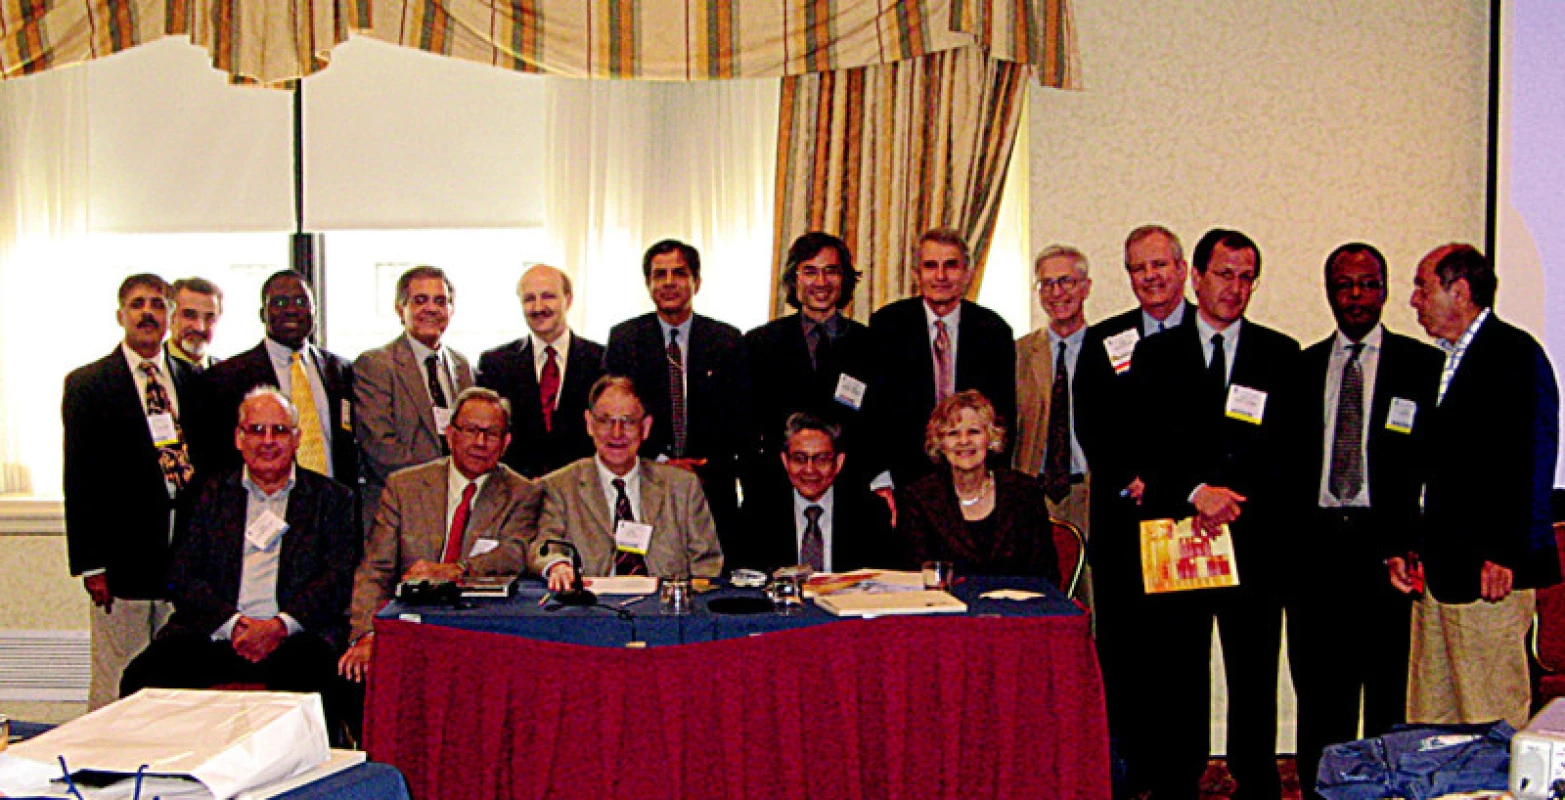 Někteří účastníci ForaWPA 5. 5. 2008 v hotelu Capitol Hilton veWashingtonu (sedící zprava: Sheila Hollins, JuanMezzich, John Cox,George Christodoulou).